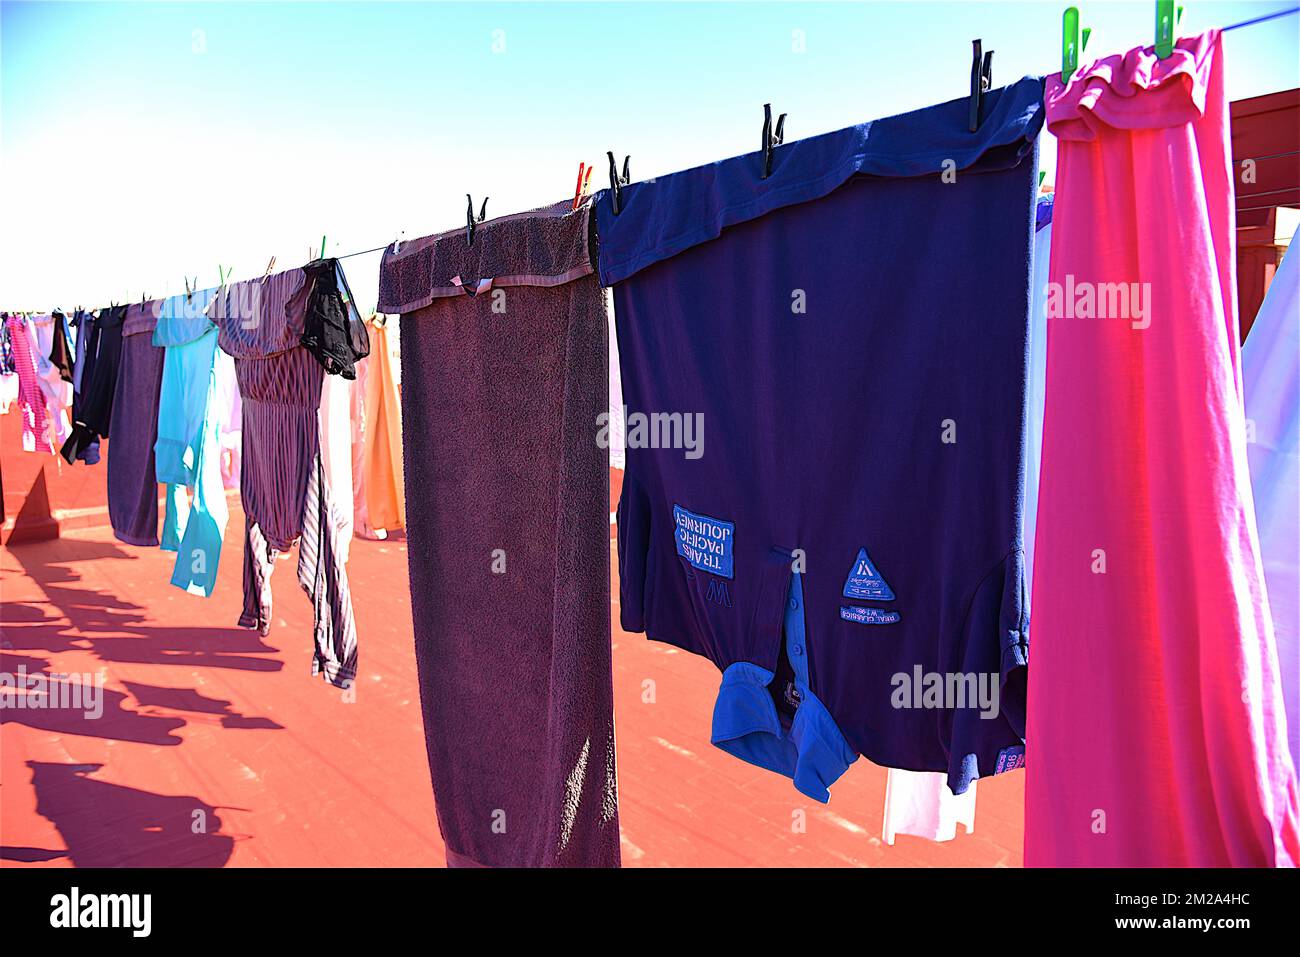 Drying of laundry | Séchage du linge 05/10/2017 Stock Photo